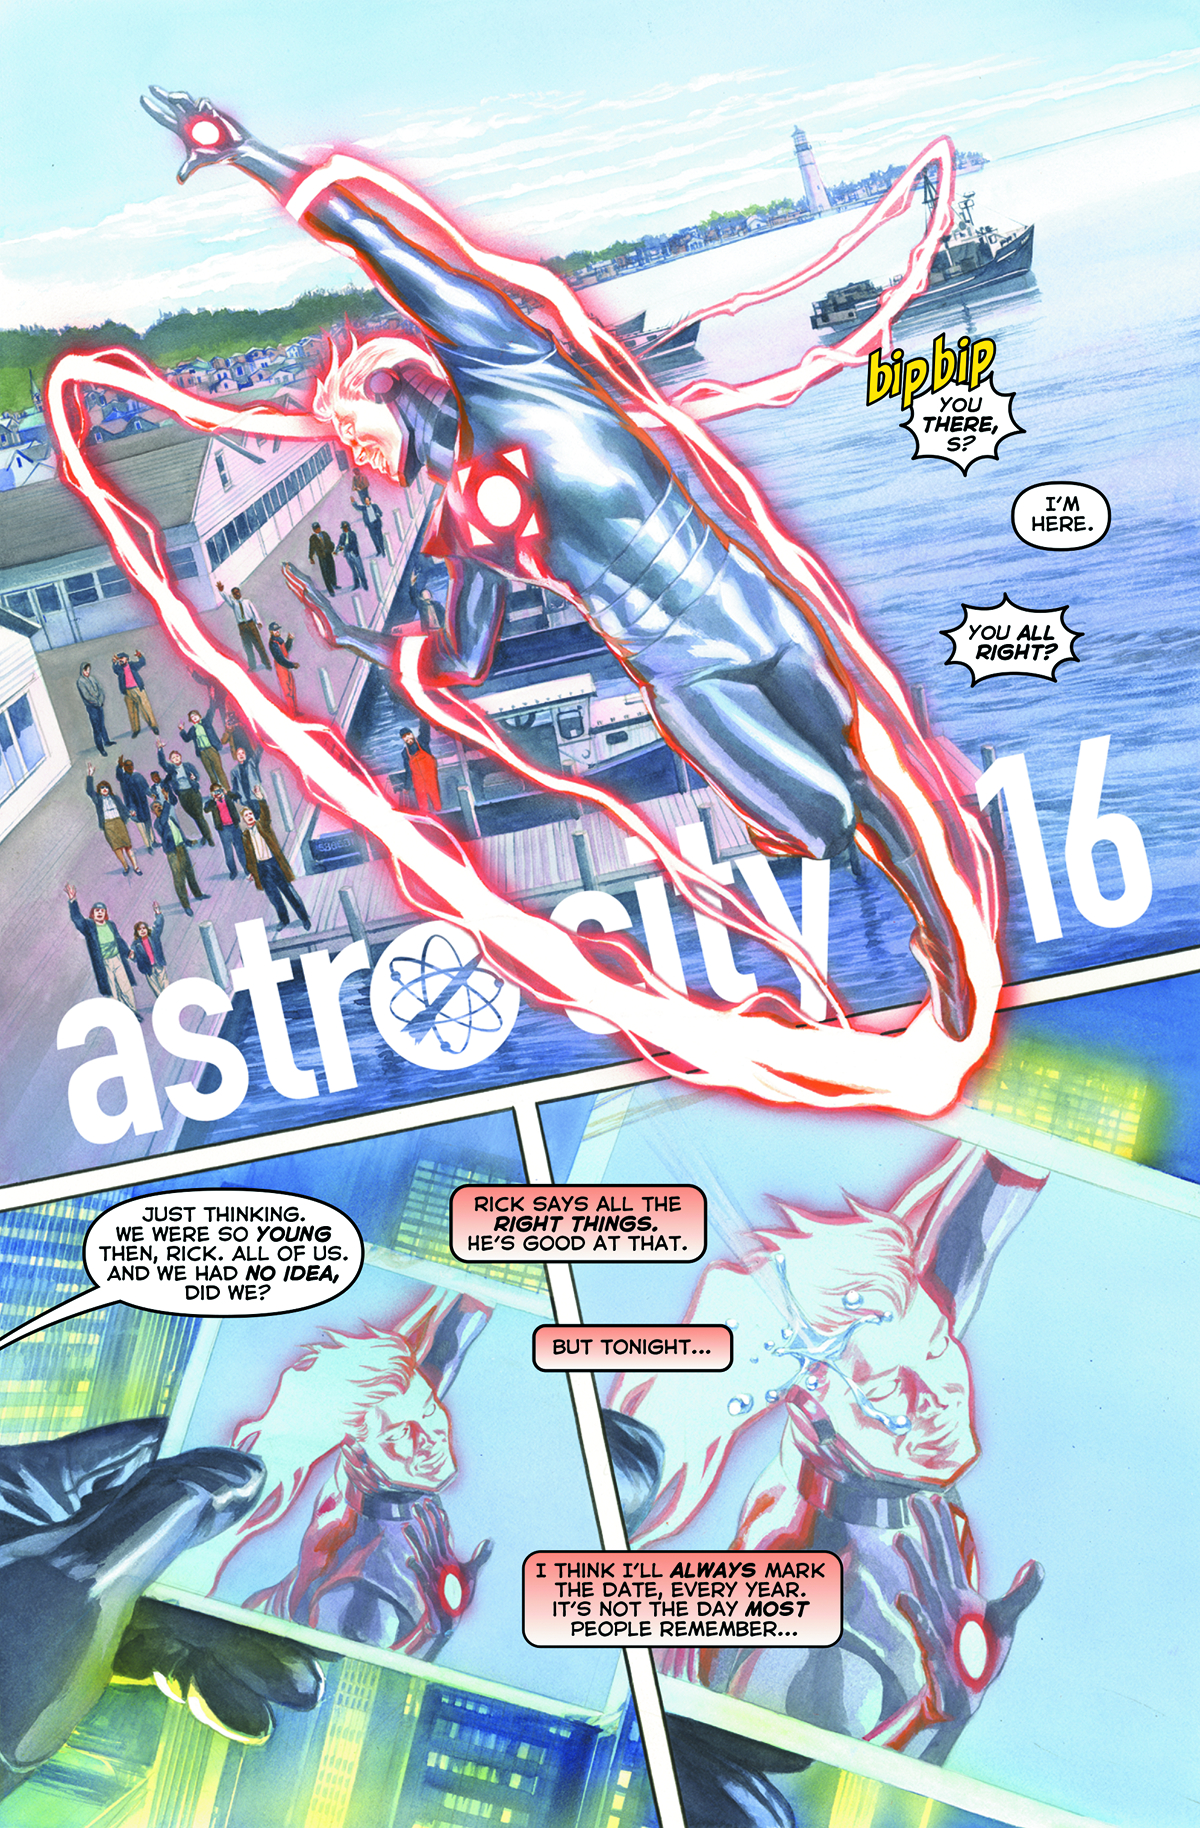 ASTRO CITY #16 (DEFY)